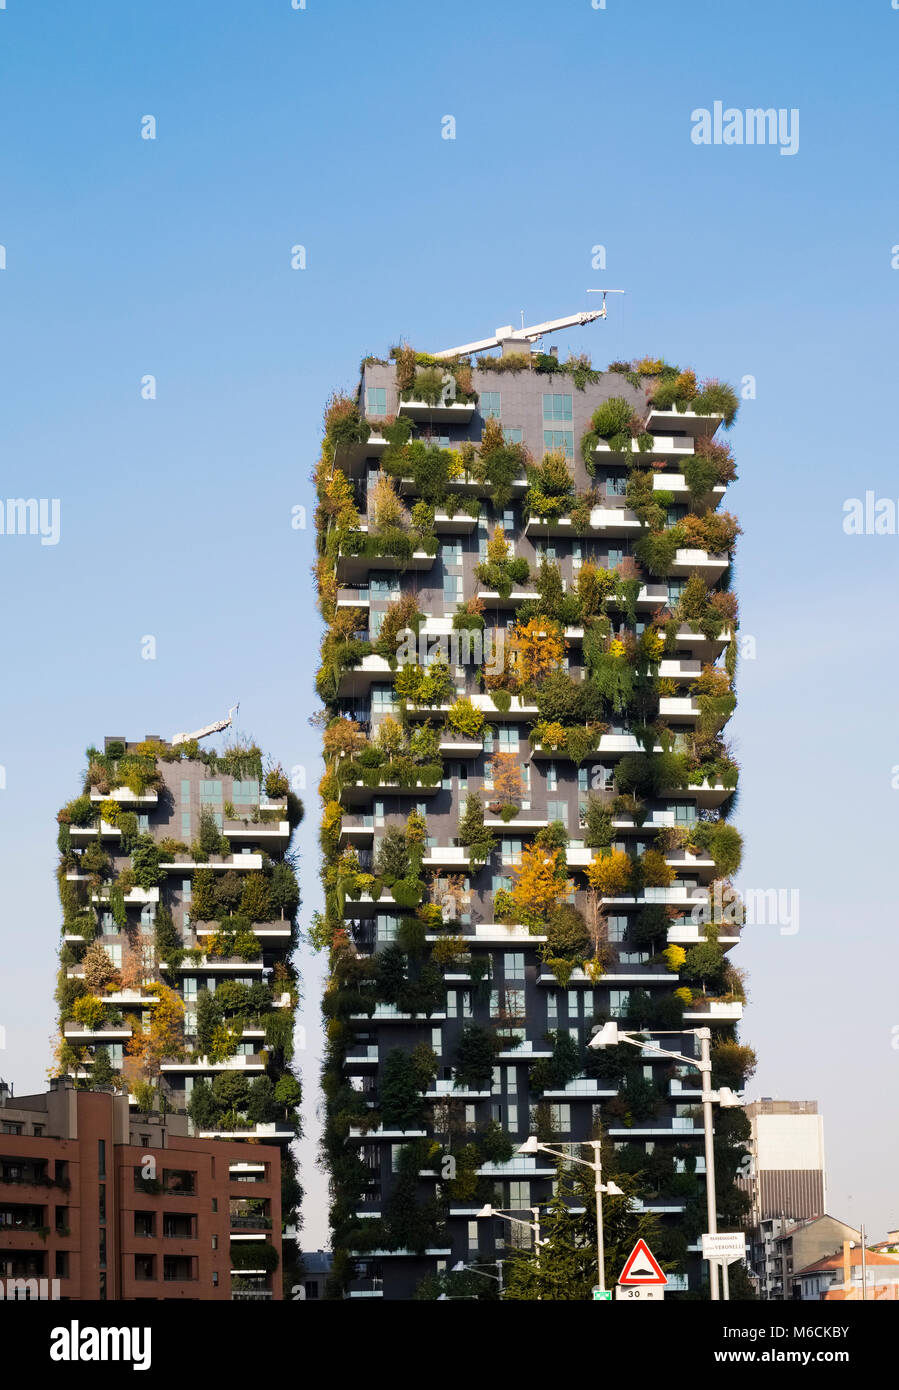 Bosco verticale (Vertical) de la forêt, quartier résidentiel primé des tours dans le quartier de Porta Nuova de Milan, Italie. Banque D'Images